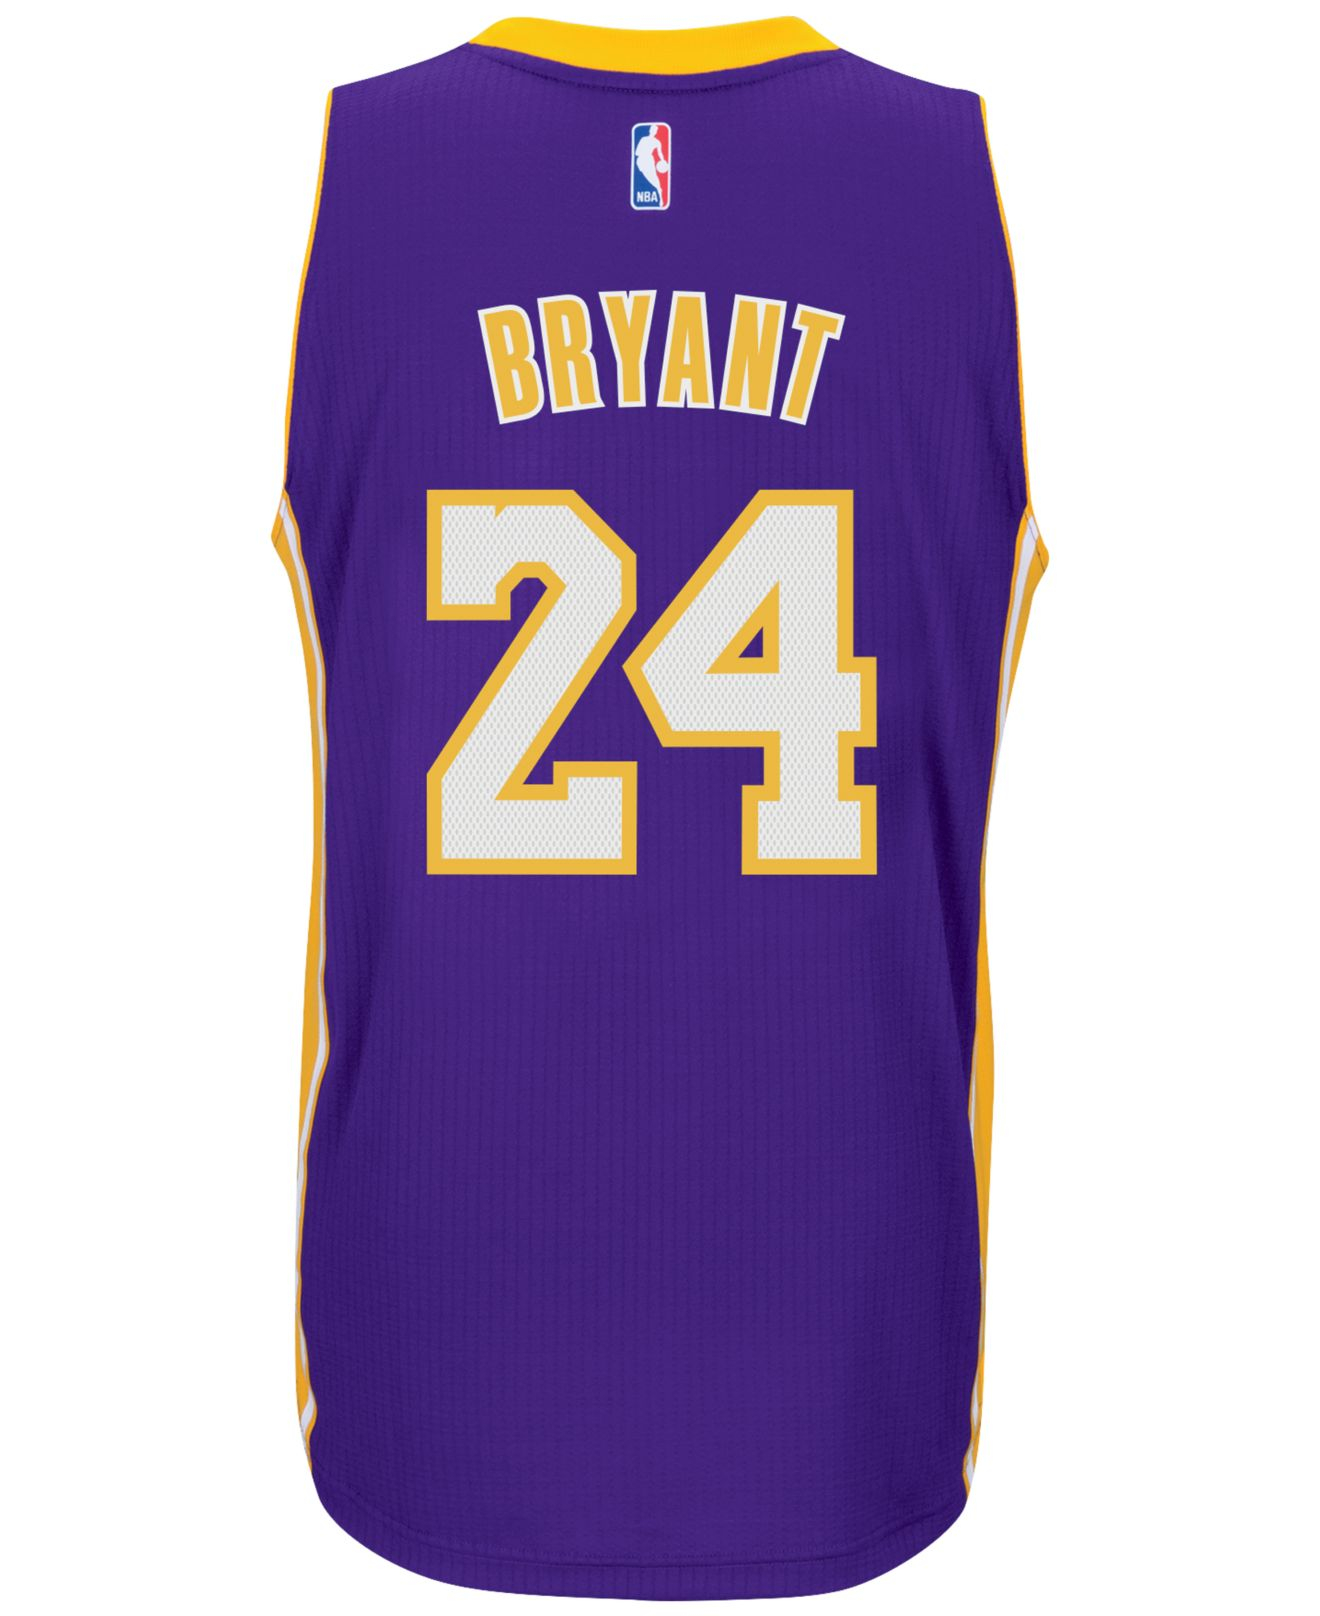 Lyst - Adidas Originals Men's Kobe Bryant Los Angeles Lakers Swingman ...